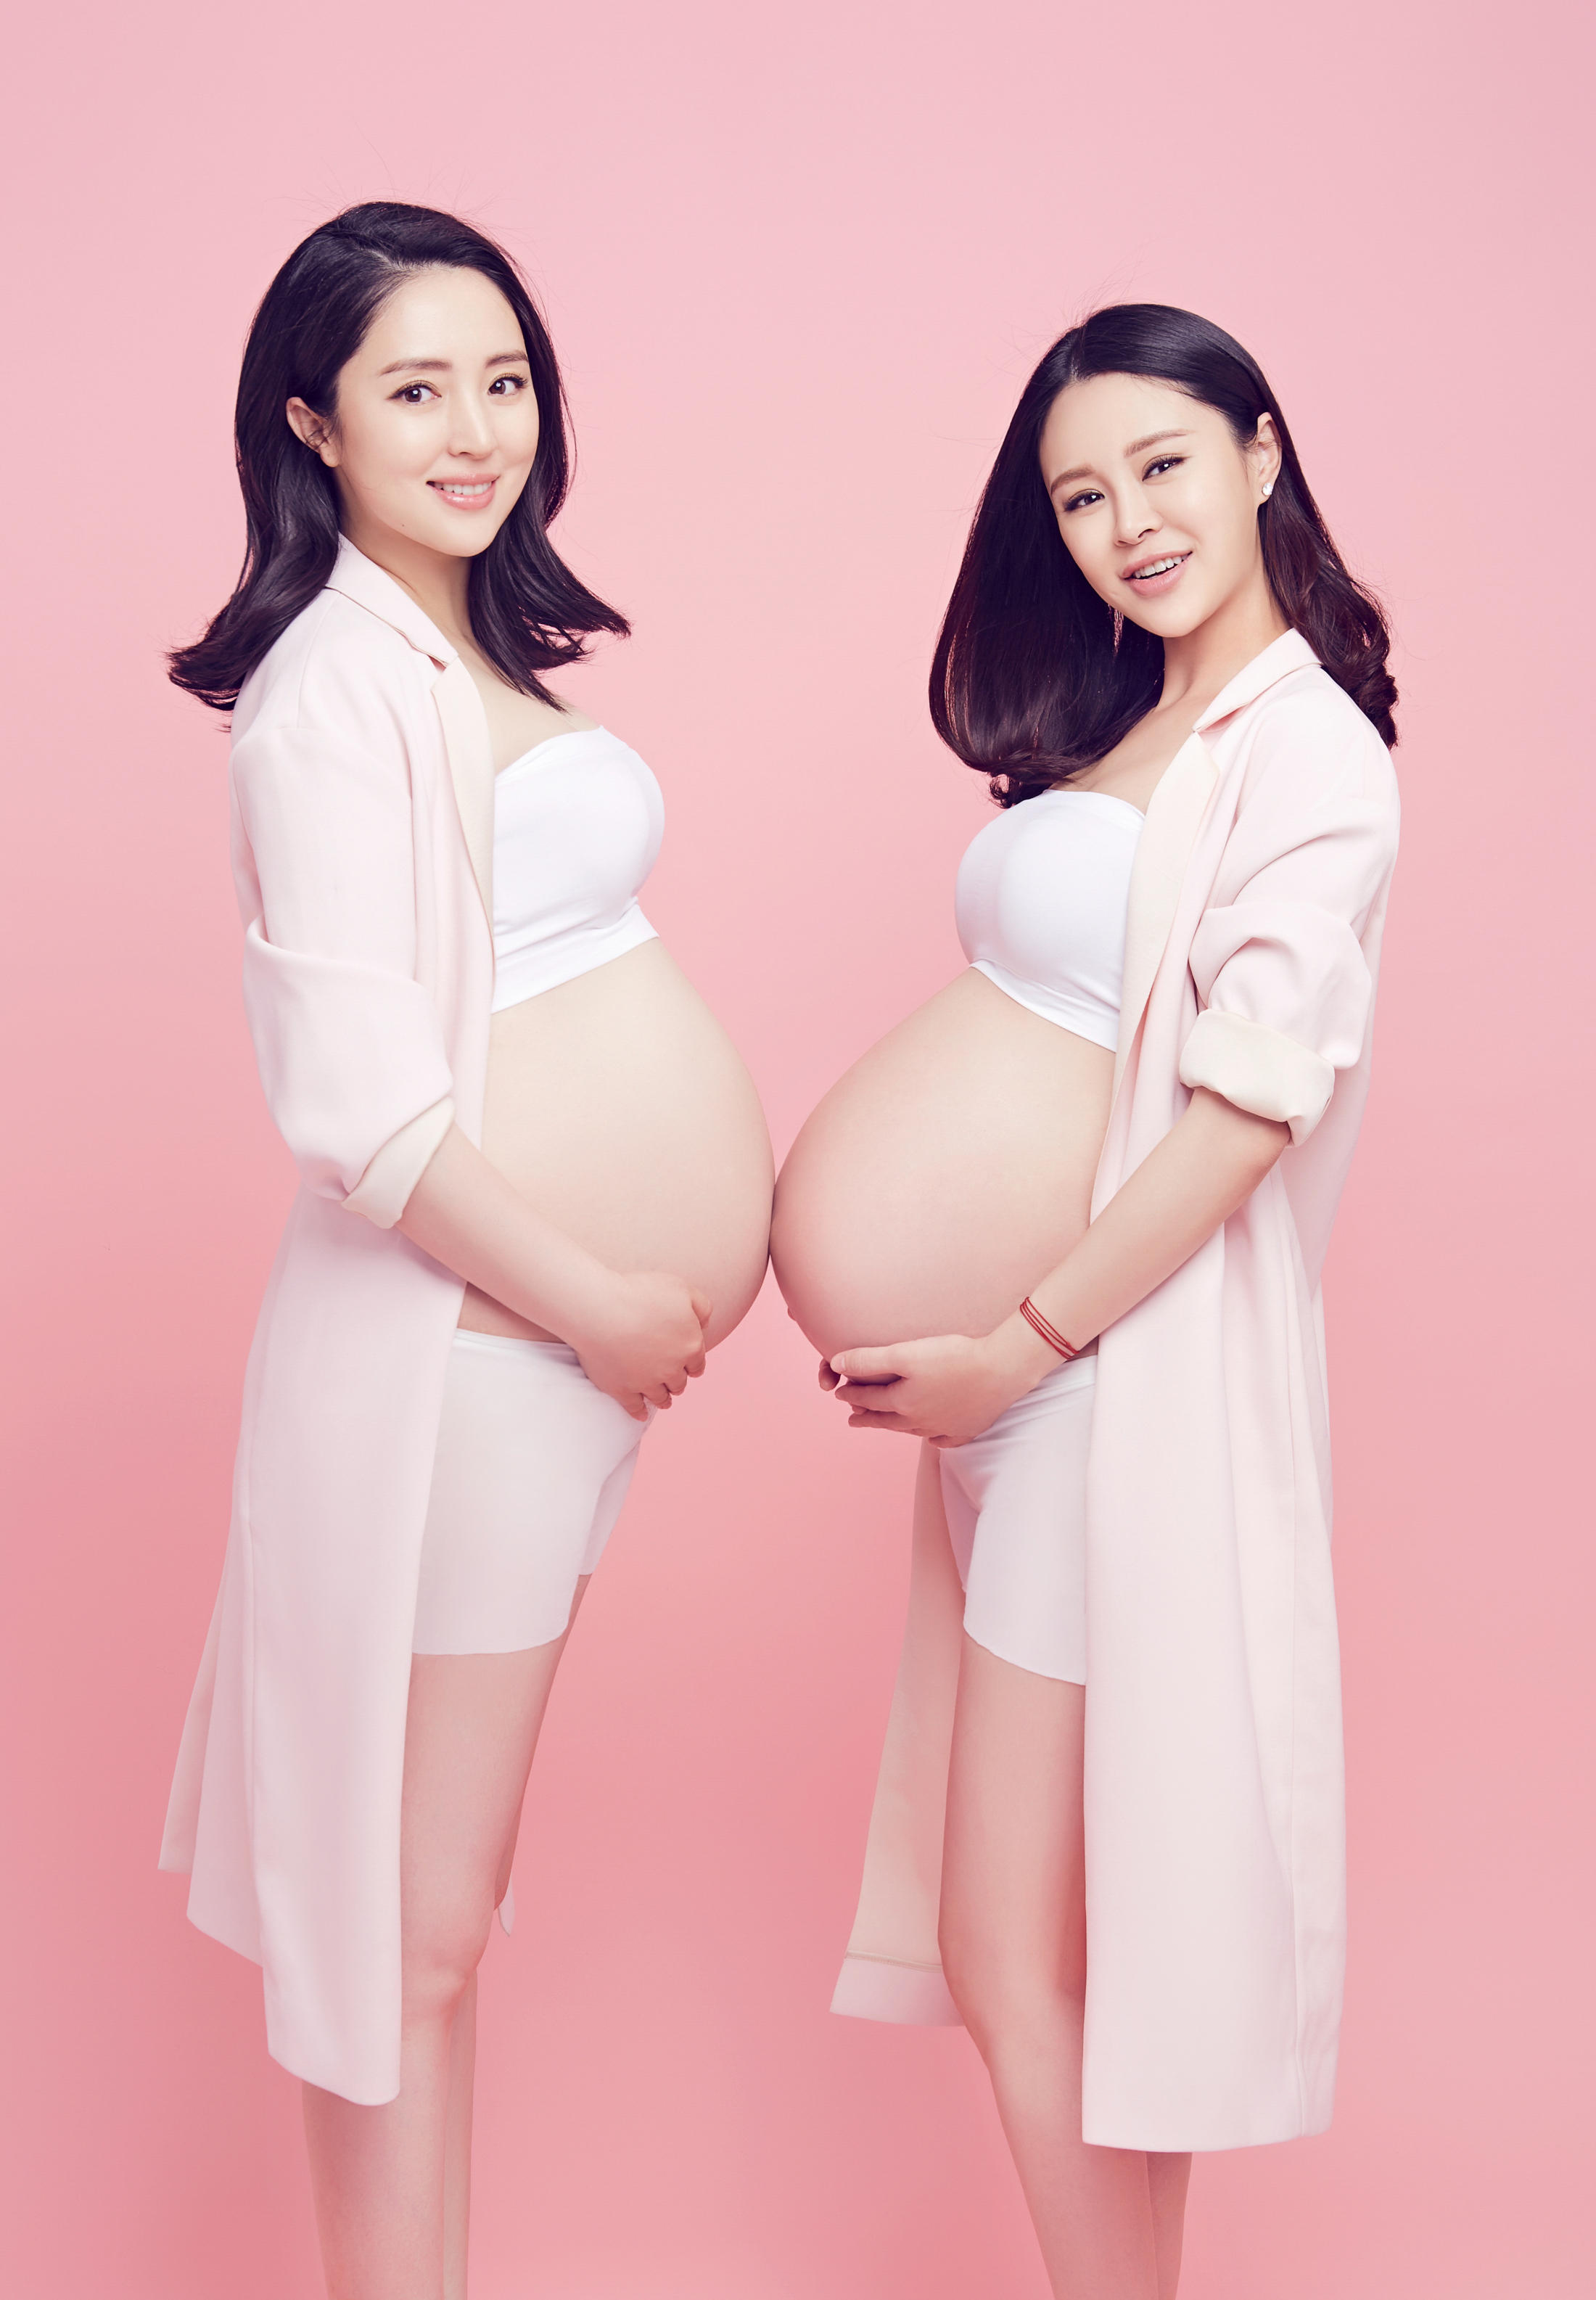 董璇关悦写真合影美照,即使在怀孕期间,她们也是会想着彼此,让人羡慕